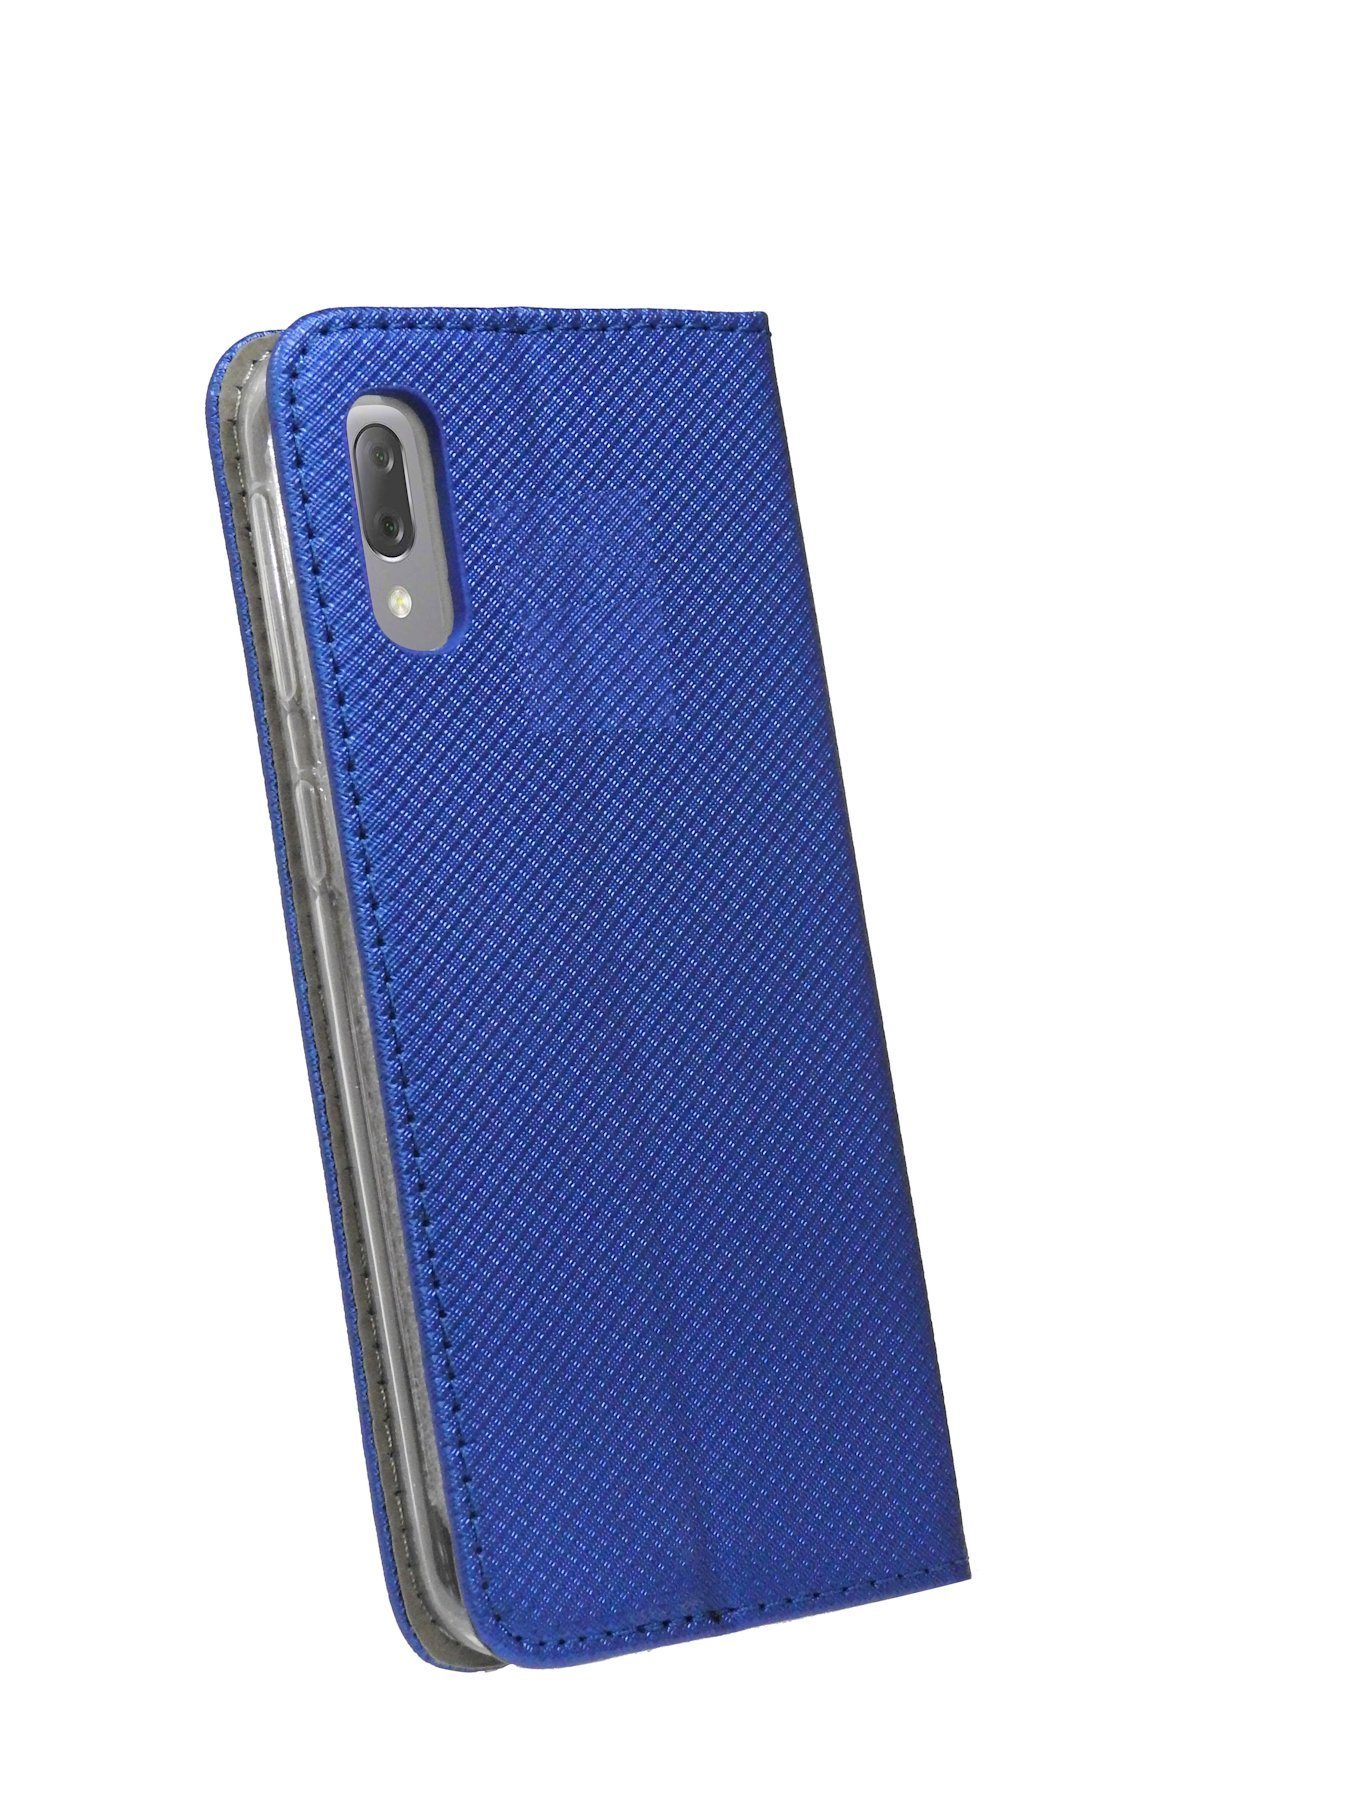 L3 Kartenfach Blau Tasche Hülle Brieftasche Schutzhülle Handytasche "Smart" cofi1453 Handy SONY mit mit kompatibel Standfunktion, XPERIA Etui Buch